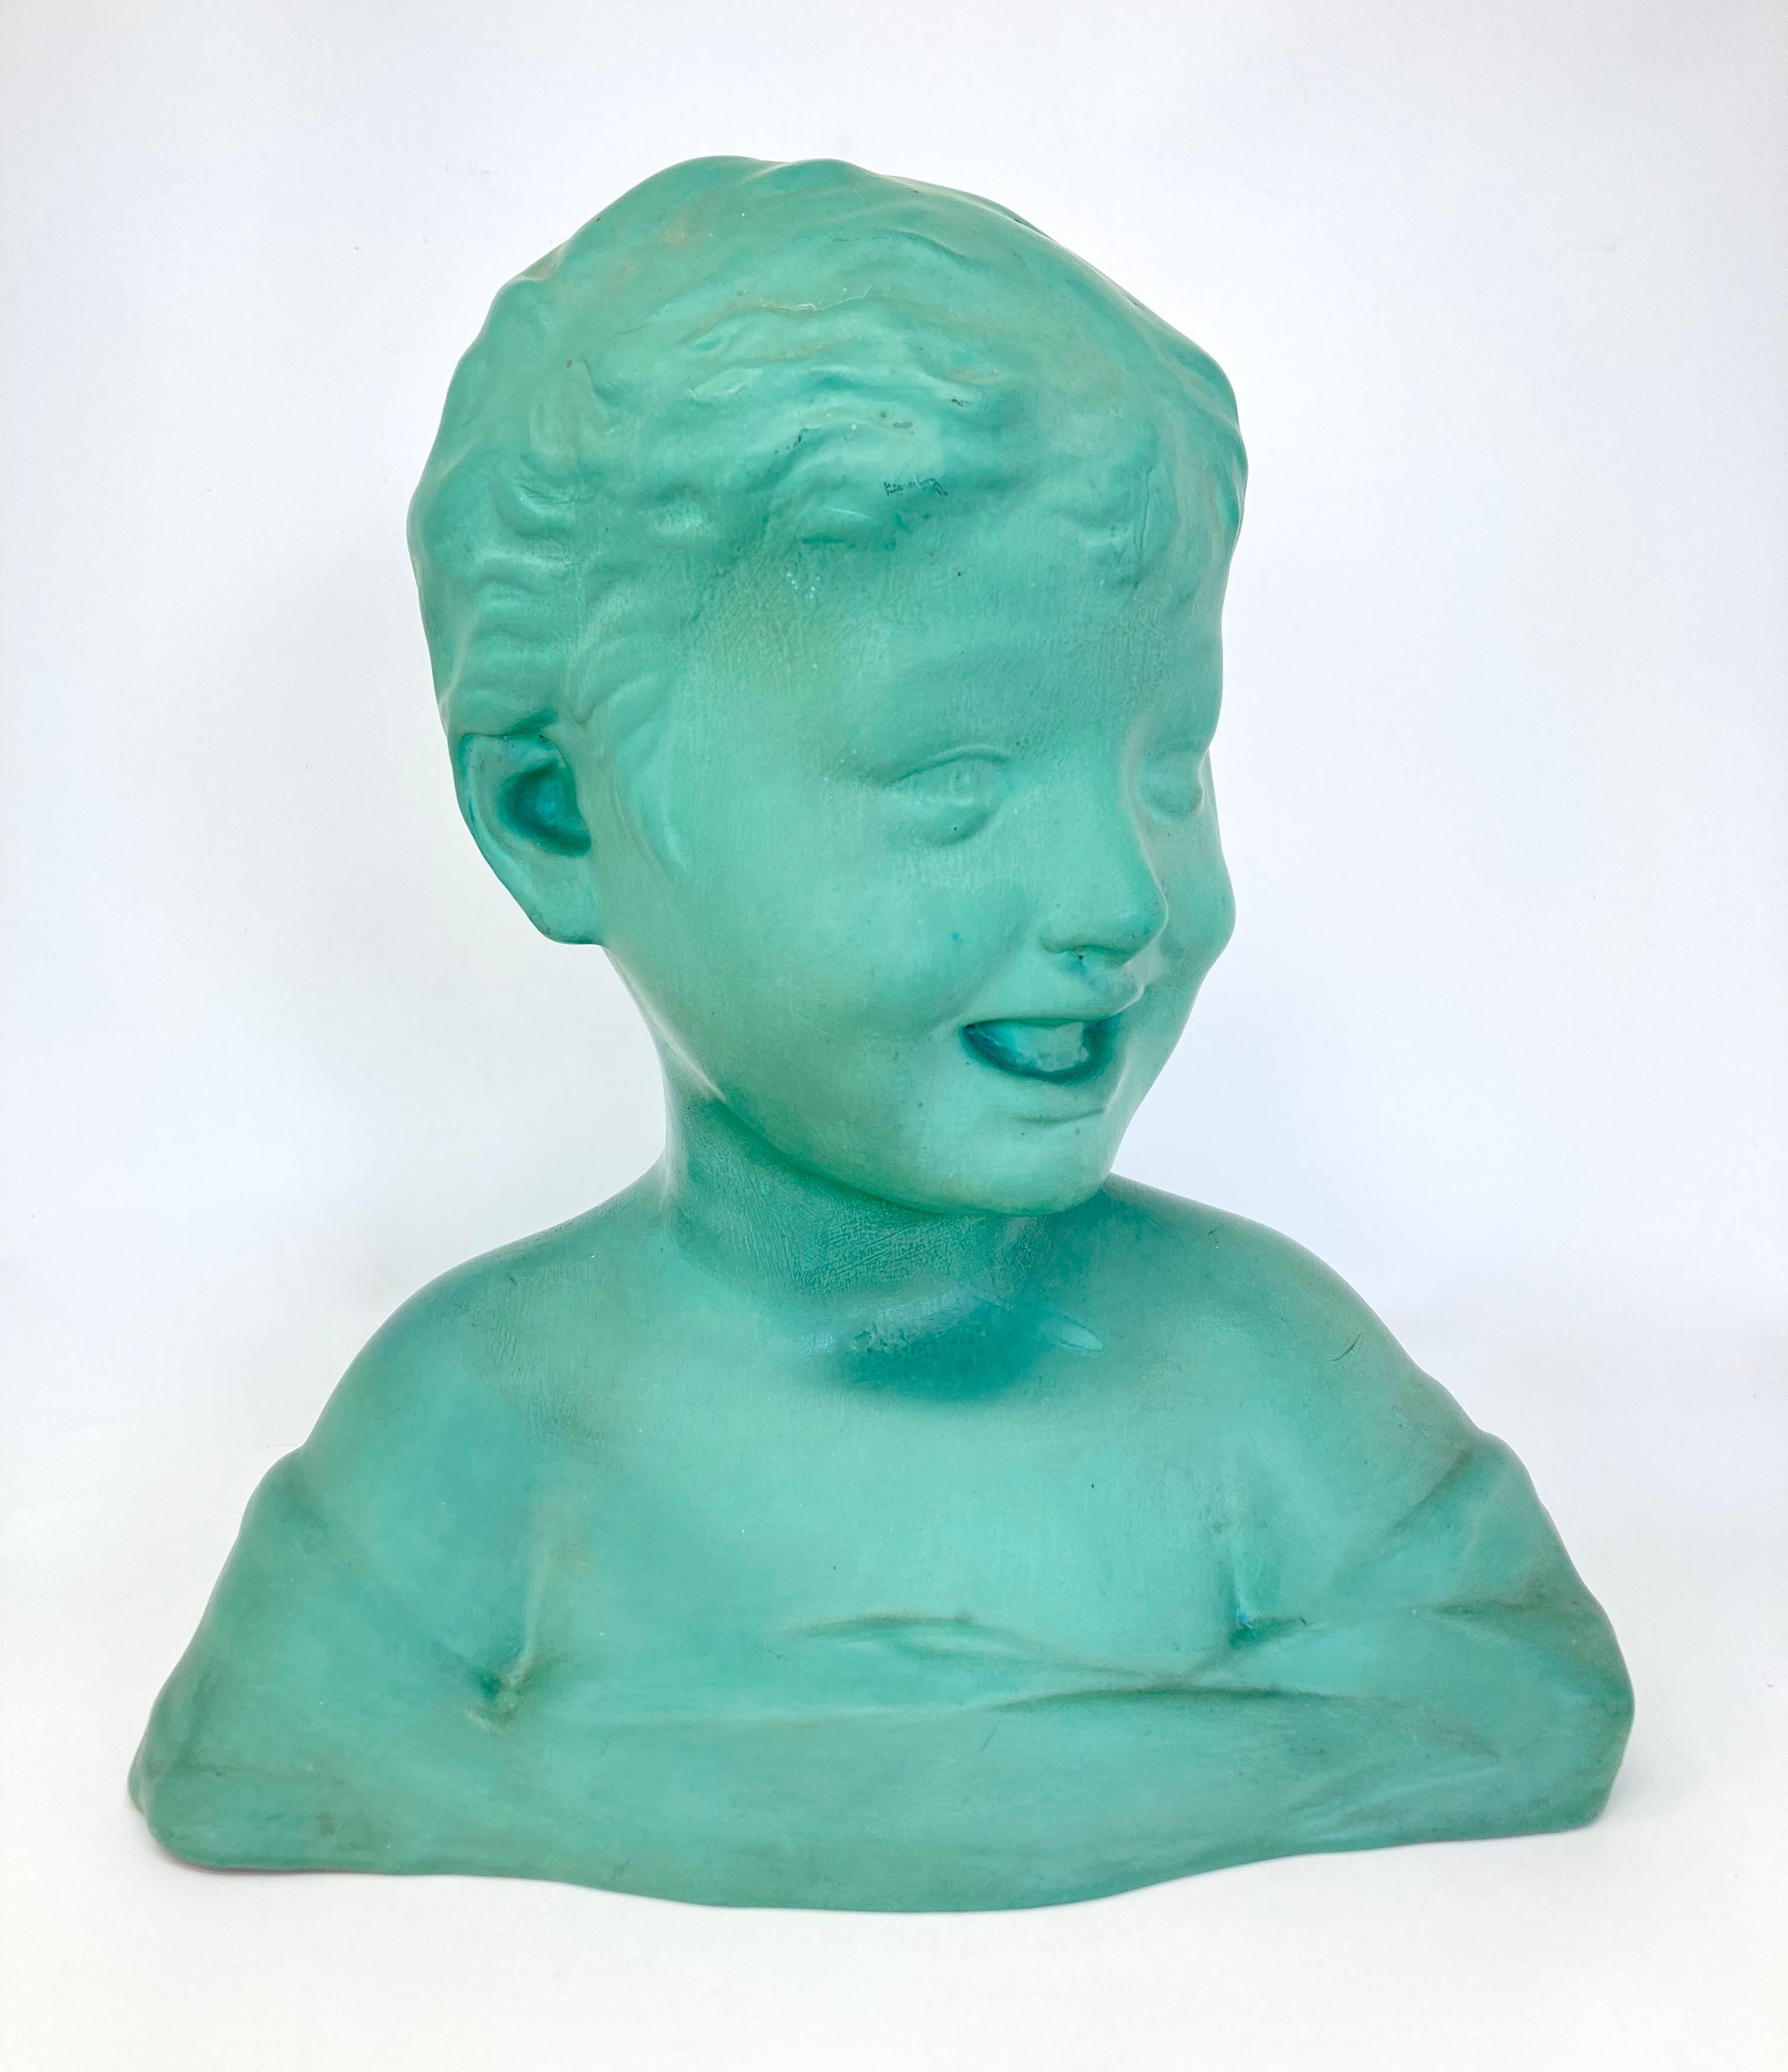 Un joli buste d'enfant en terre cuite réalisé par le célèbre potier français Saint-Clément. Non daté mais datant probablement des années 1920/30, ce buste faisait partie de la gamme 